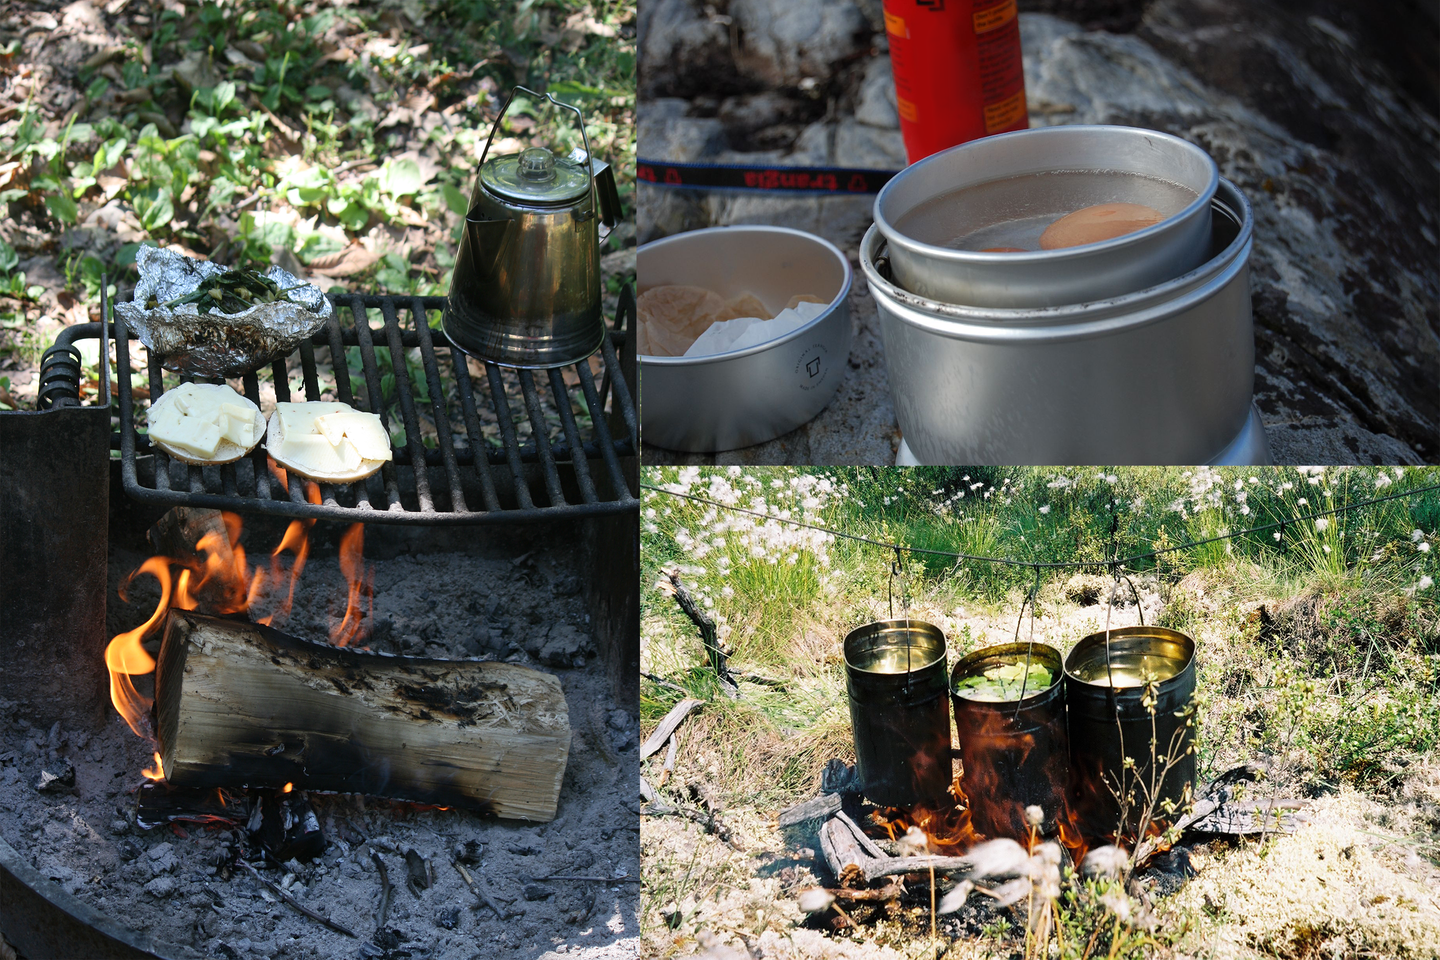 Trzy fotografie. Zdjęcia przedstawiają użytkowanie metalowych pojemników na biwaku takich jak: menażka, wiaderka, czajnik oraz metalowy ruszt służący do pieczenia.